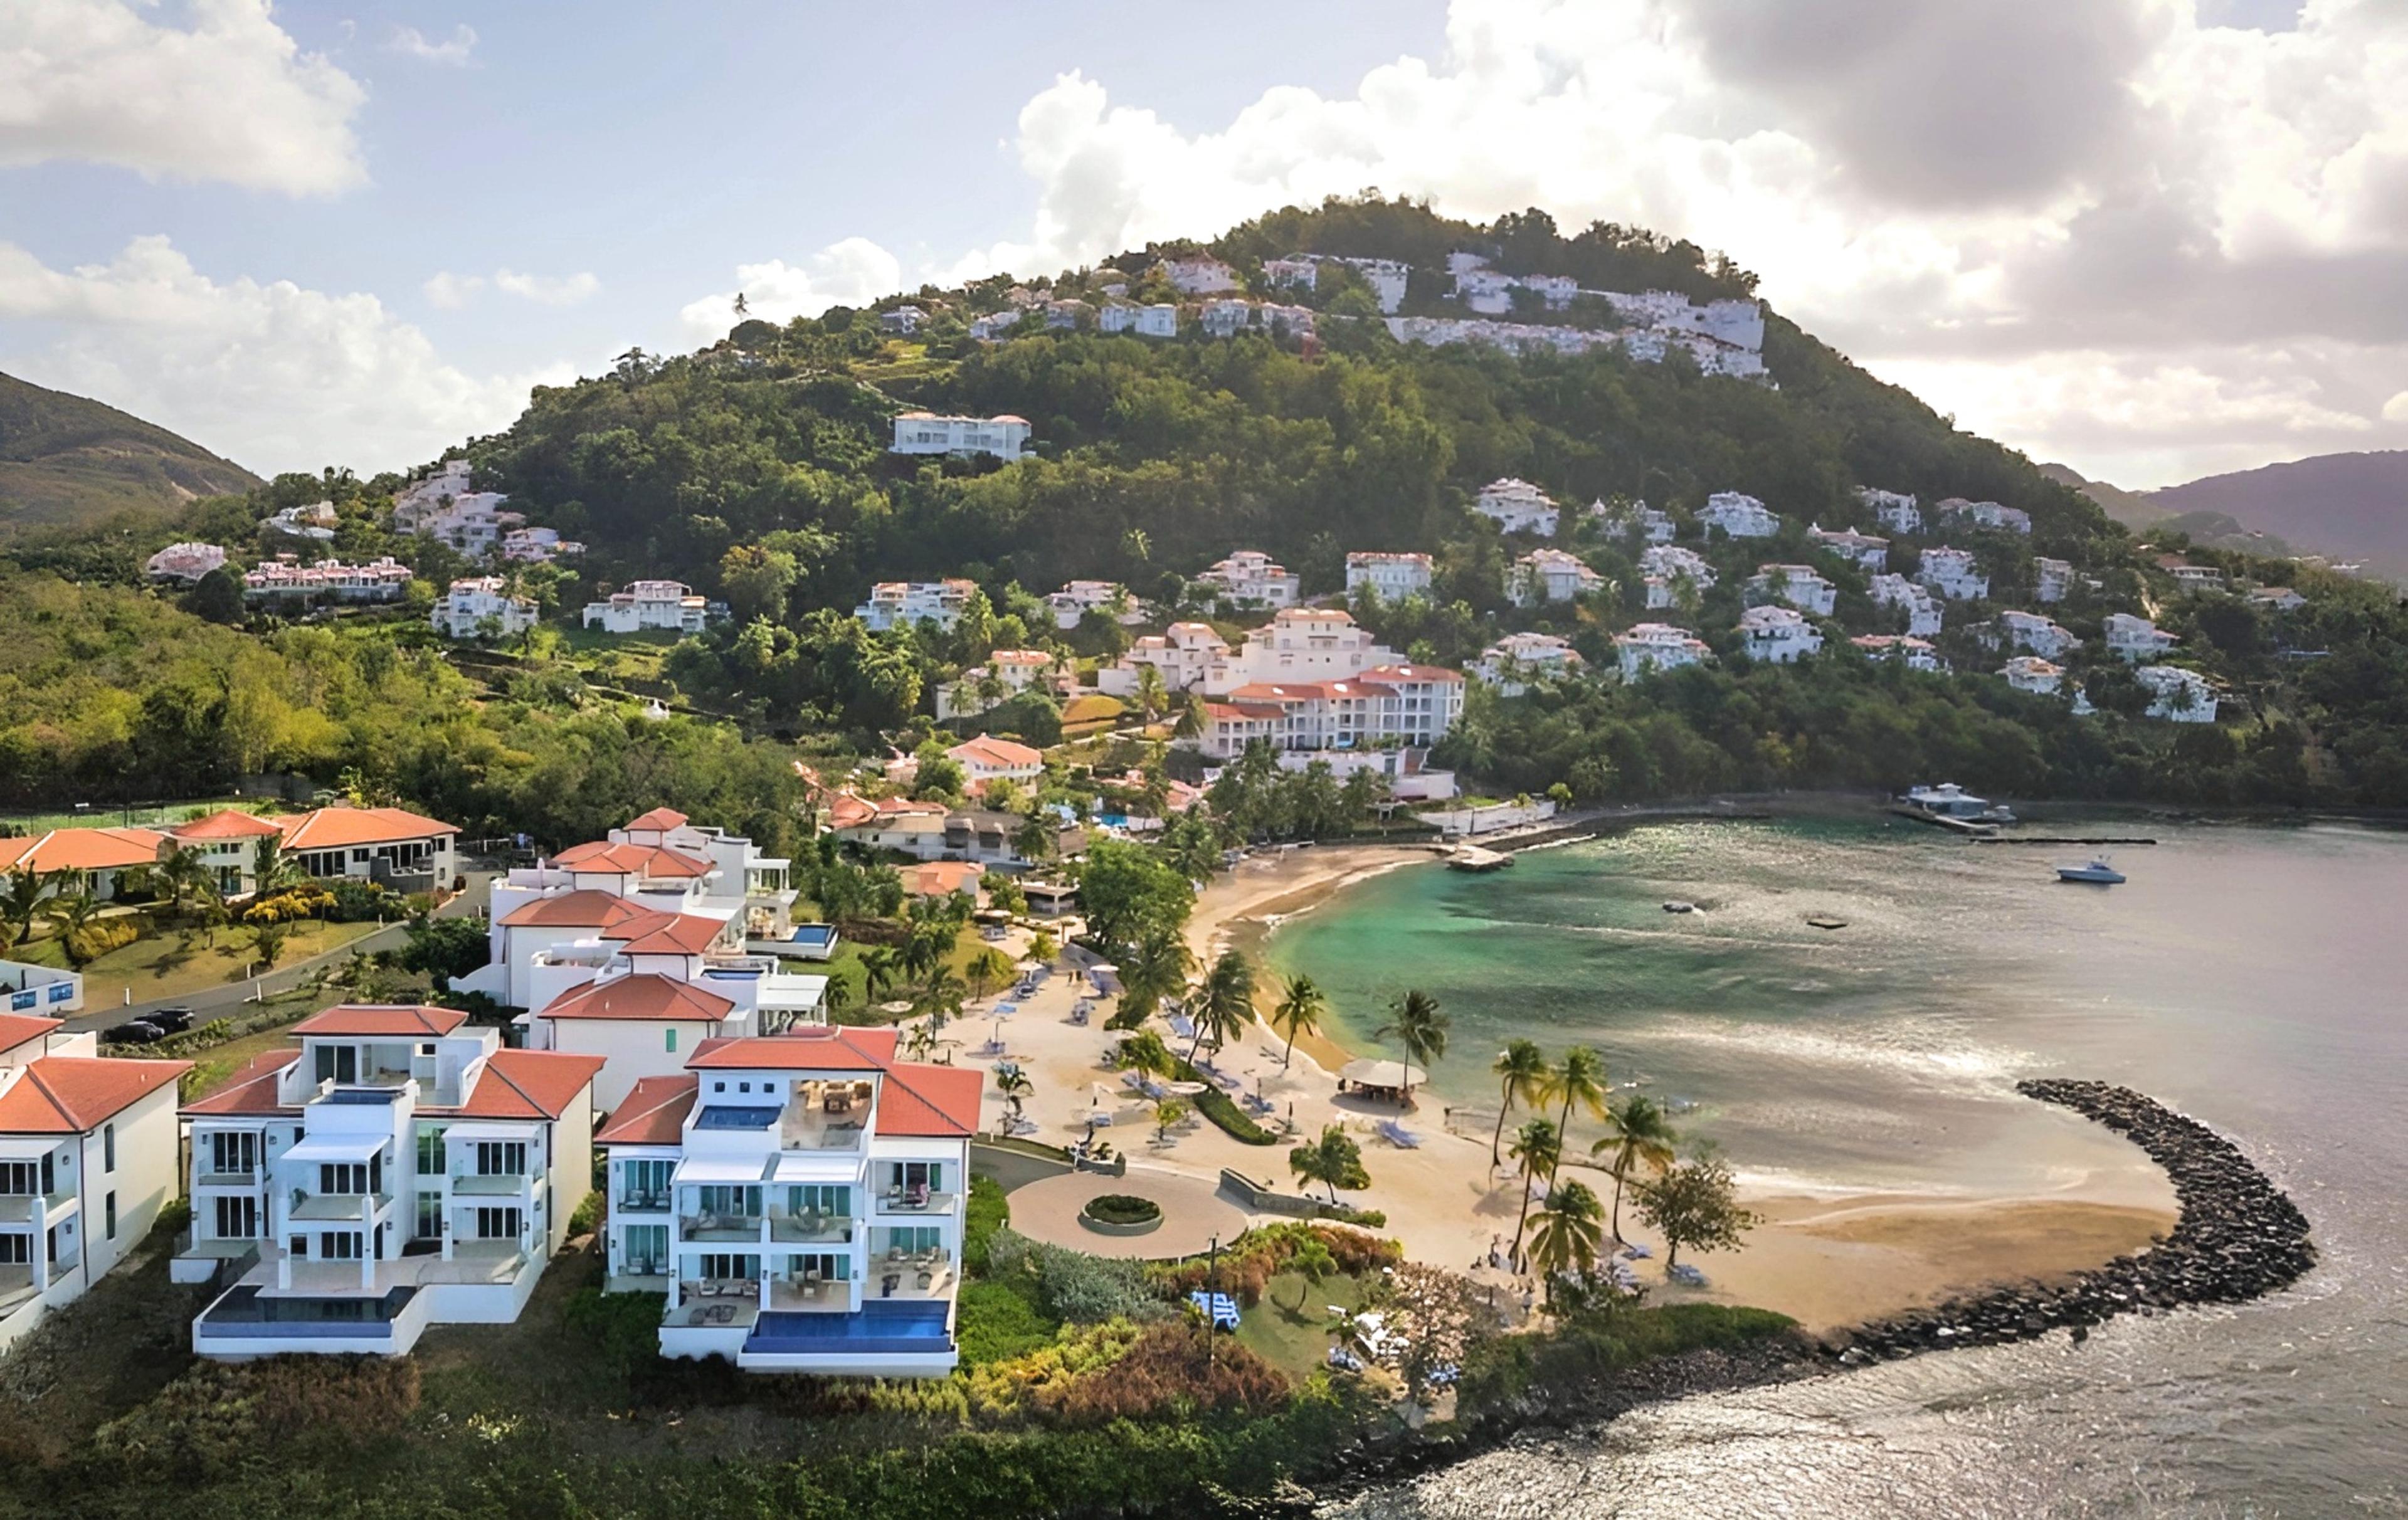 Windjammer Landing Beach Resort - Castries, St Lucia